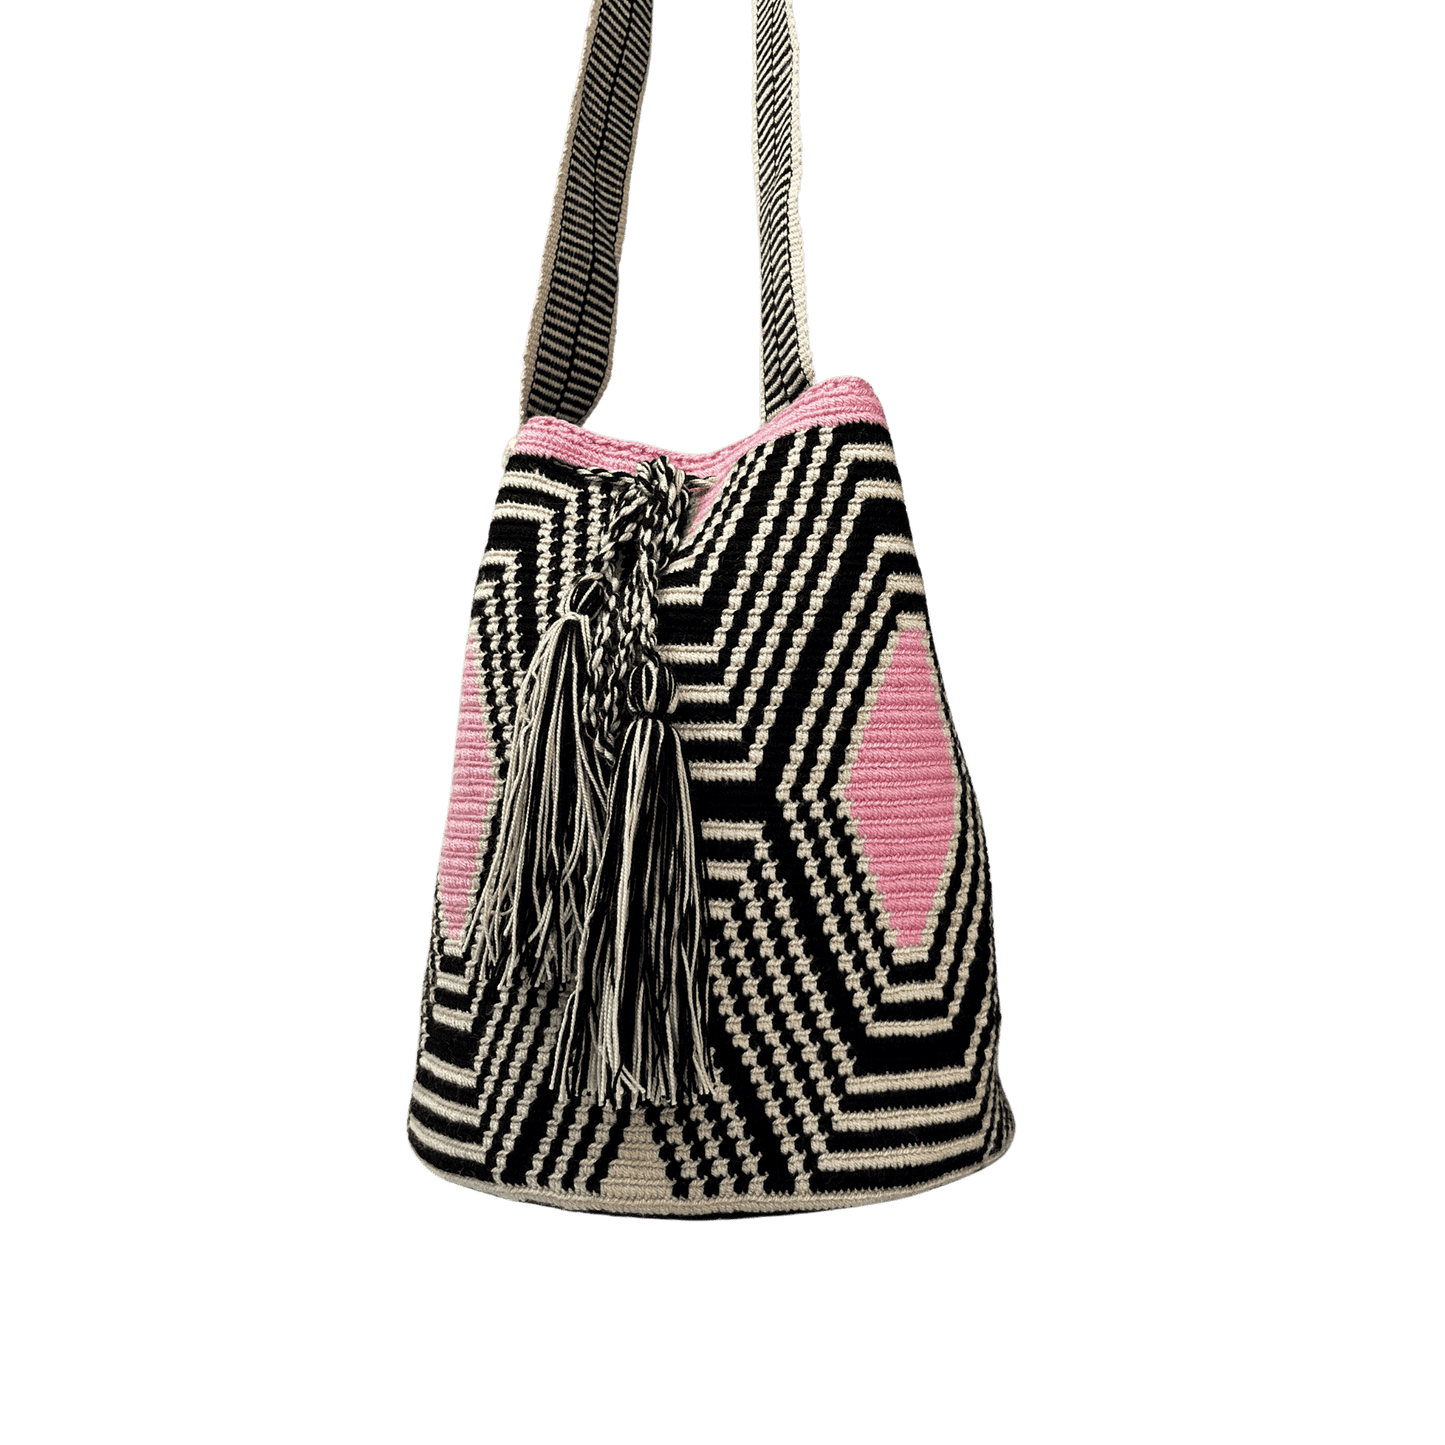 Mochila wayuu tejida a una hebra en colores negro, beige y rosado, con gaza paleteada